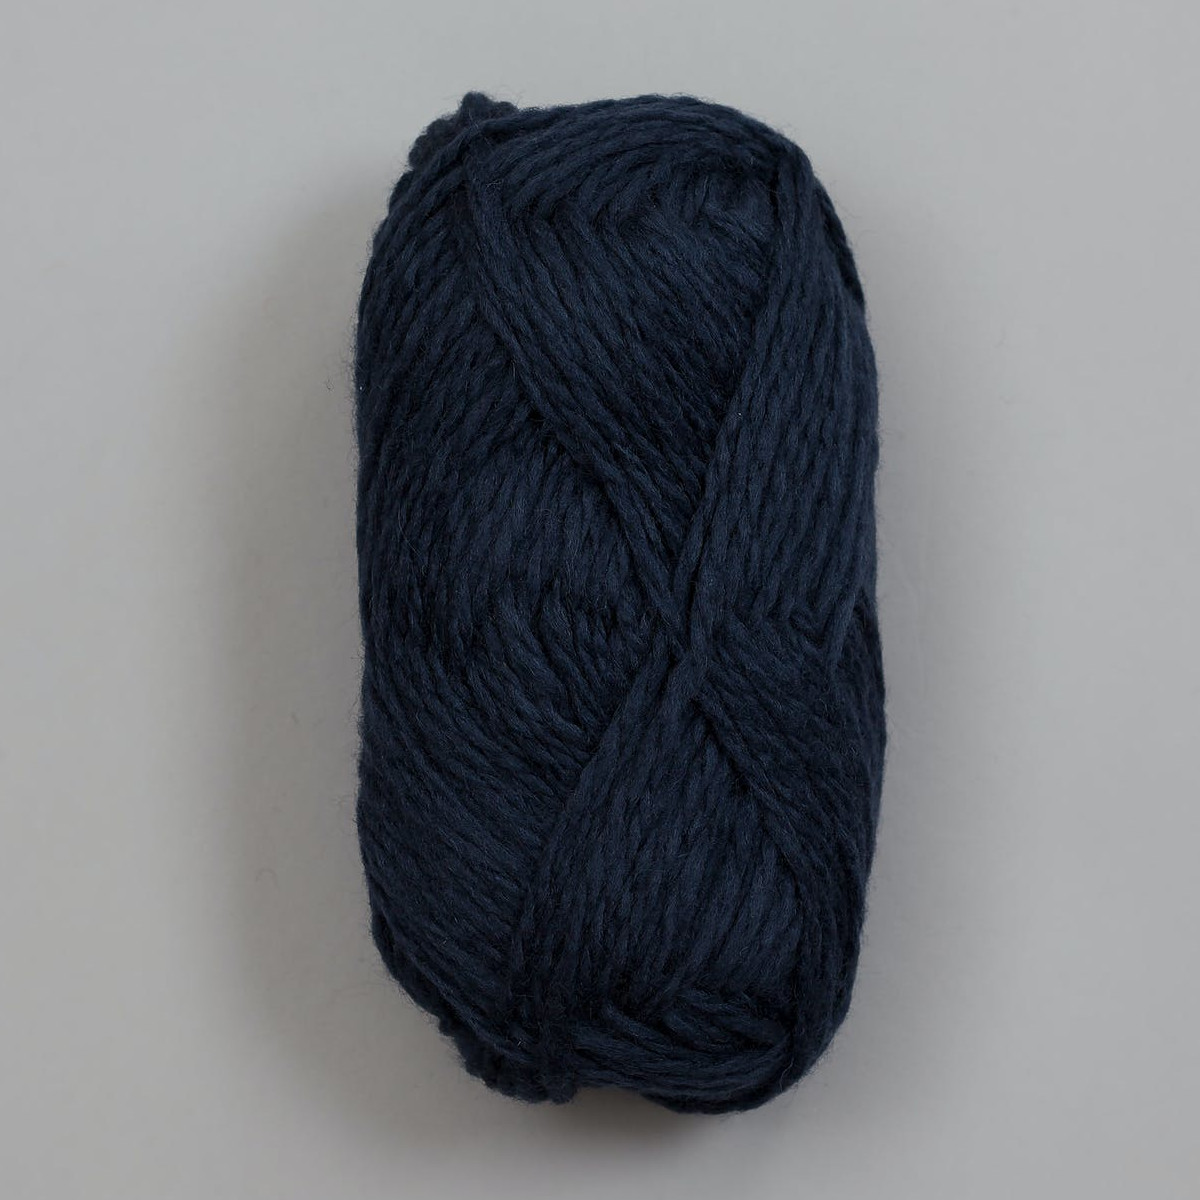 Vams - Mørk gråblå / Dunkles Graublau (58)